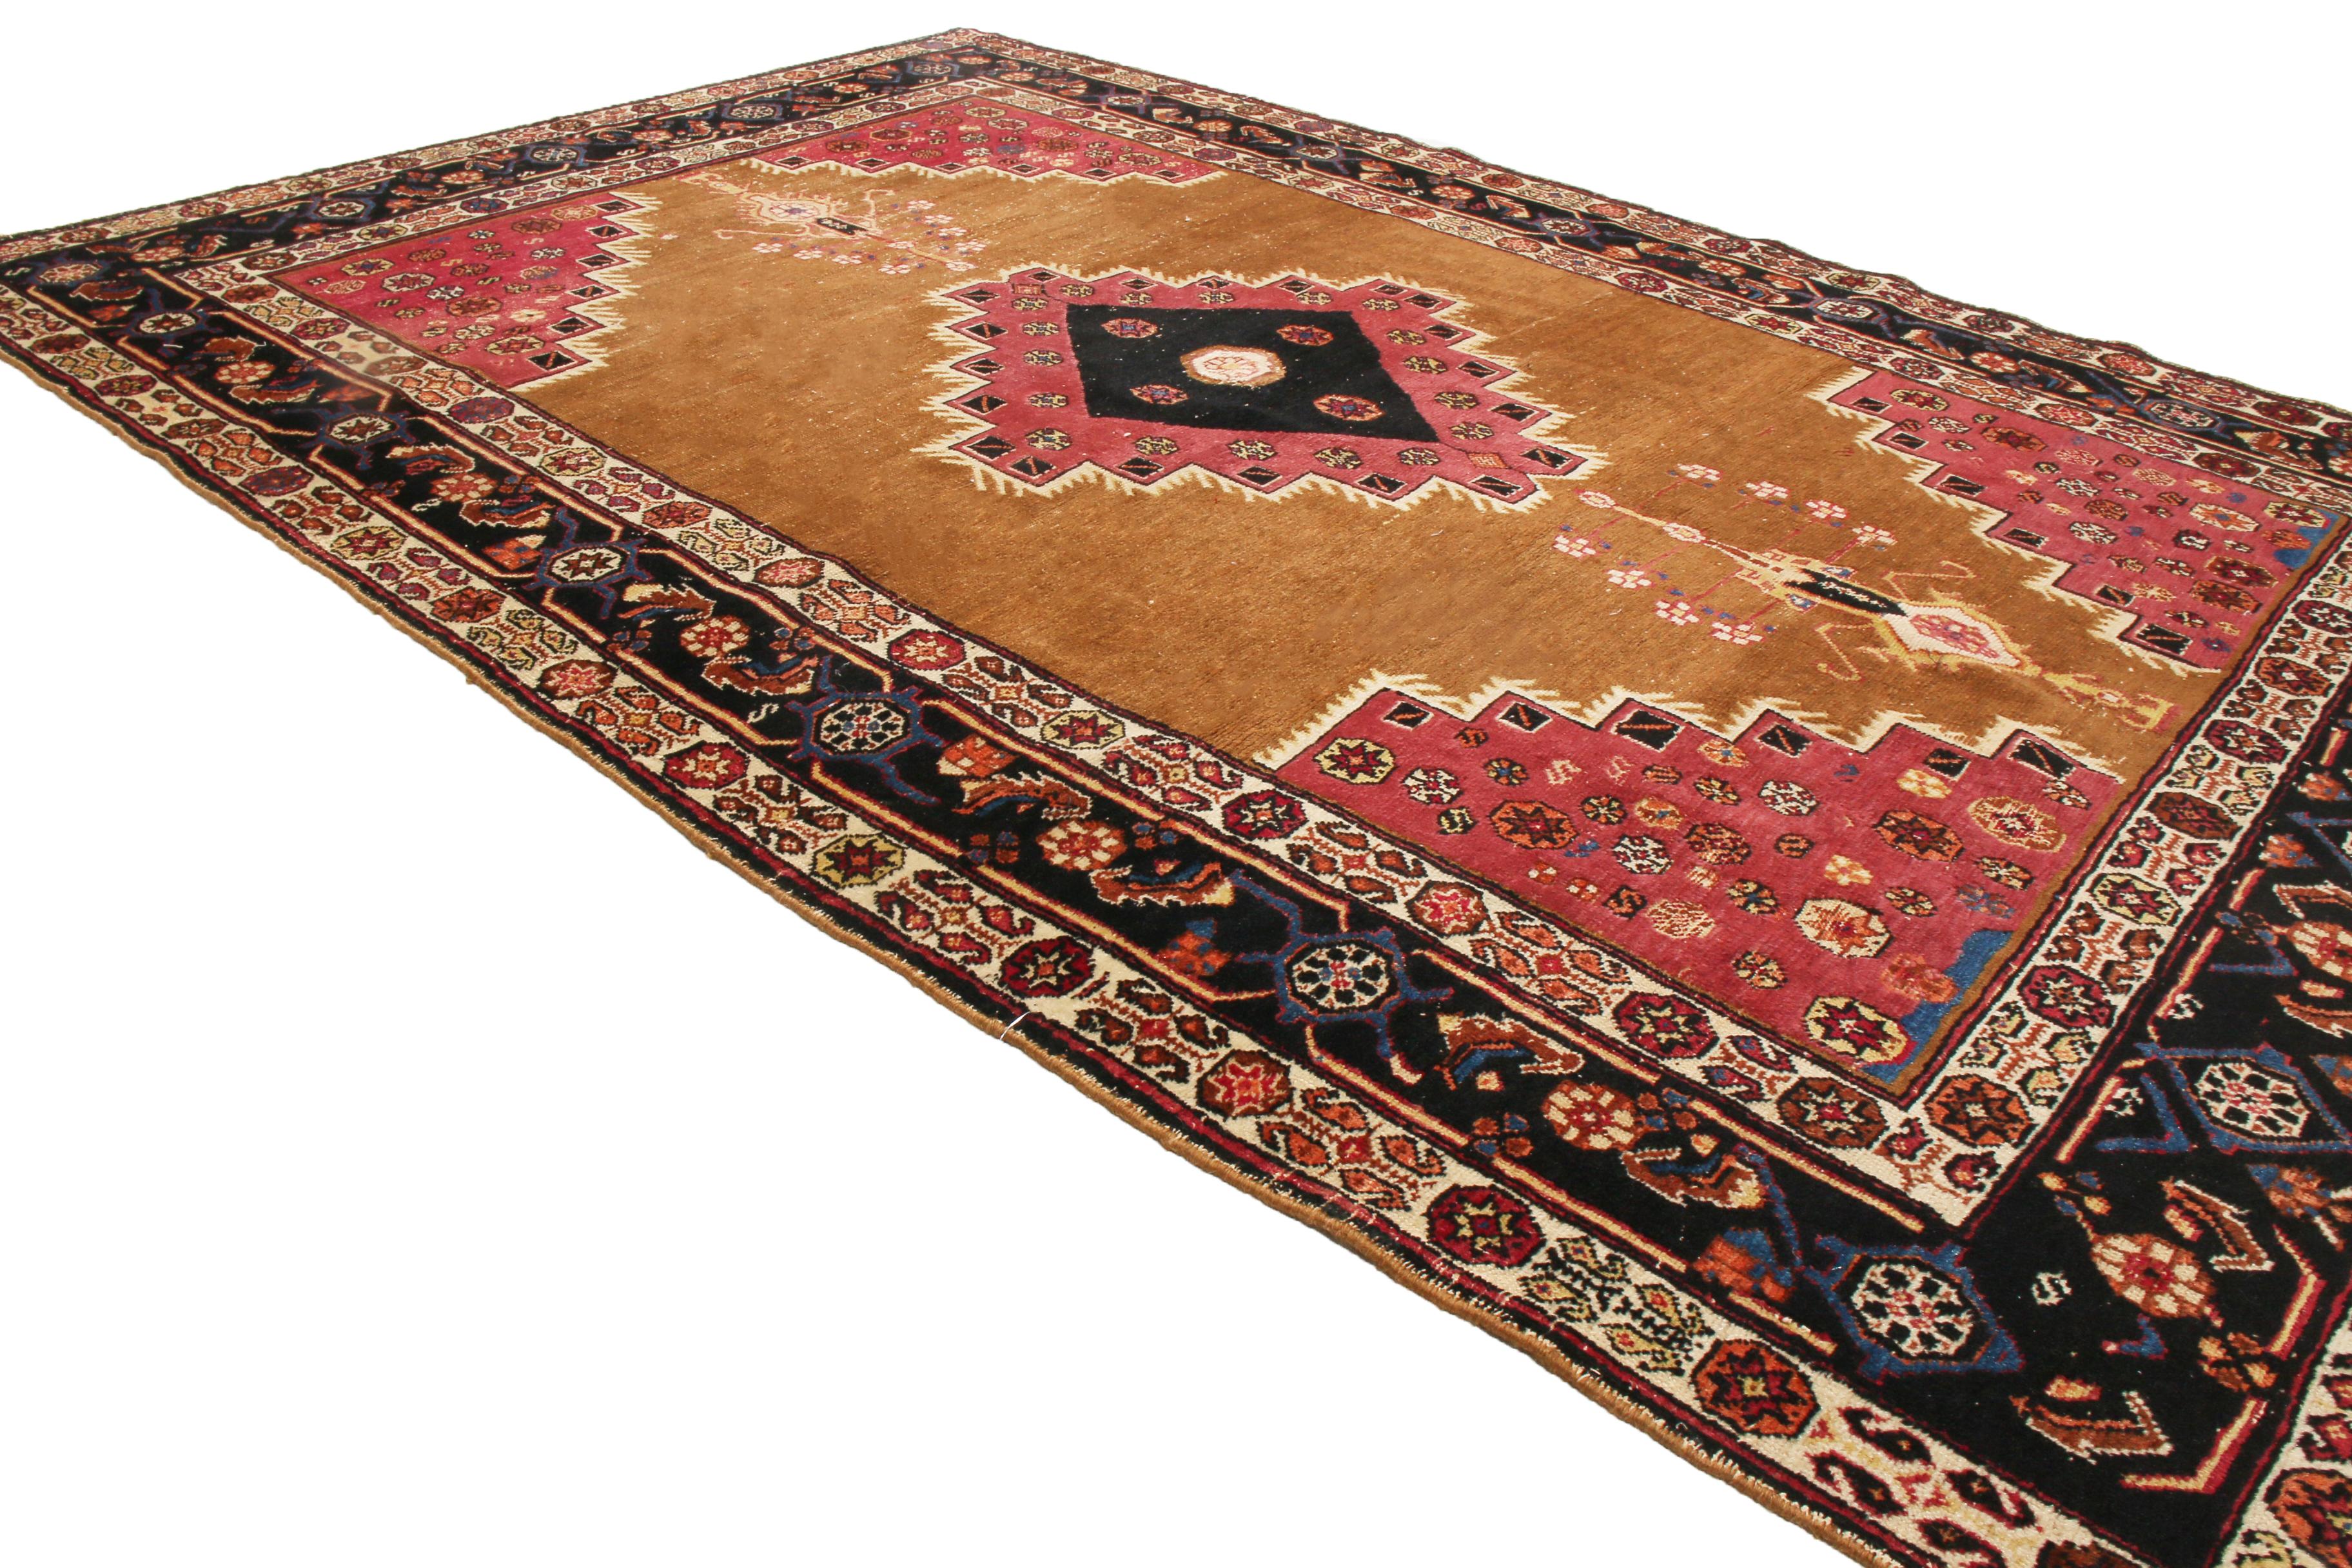 Originaire de Perse en 1900, cet ancien tapis Bakhtiari de transition présente des couleurs royales peu communes et une série variée de symboles spirituels. Noués à la main dans une laine durable et de qualité, les médaillons noir et rouge bordeaux